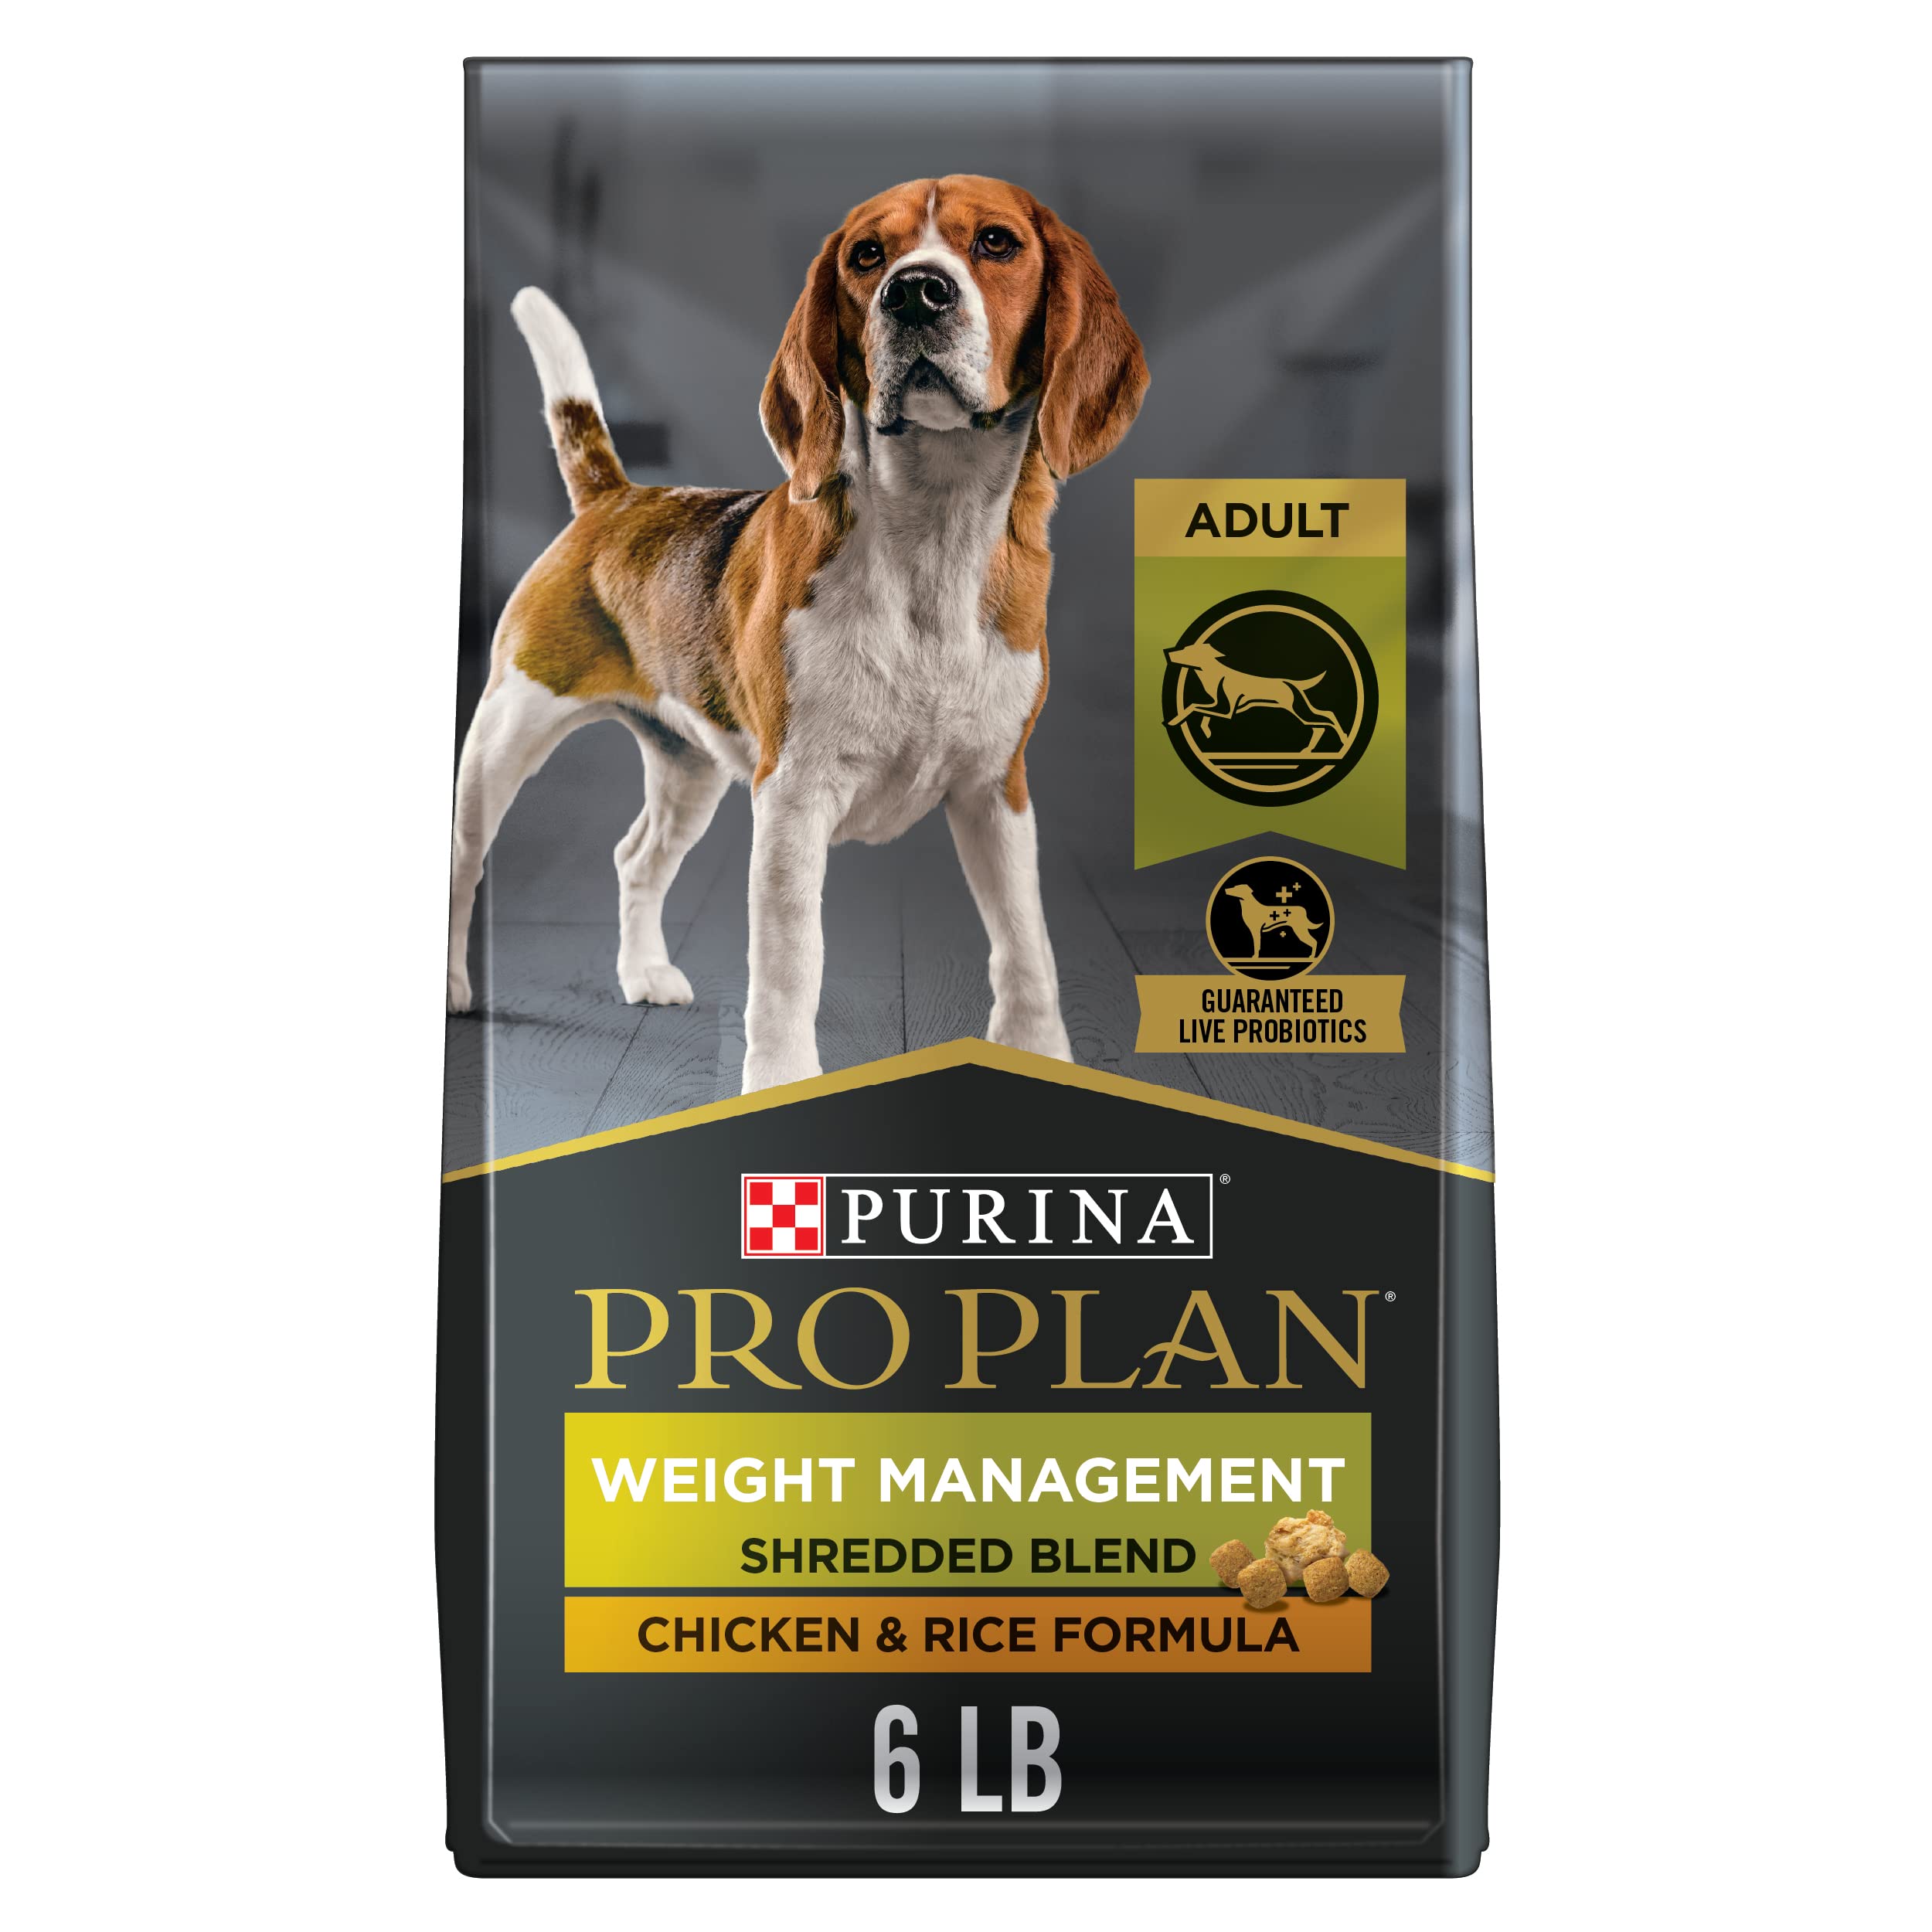 Purina Сухой корм для взрослых собак для контроля веса с курицей и кусочками (упаковка может отличаться)